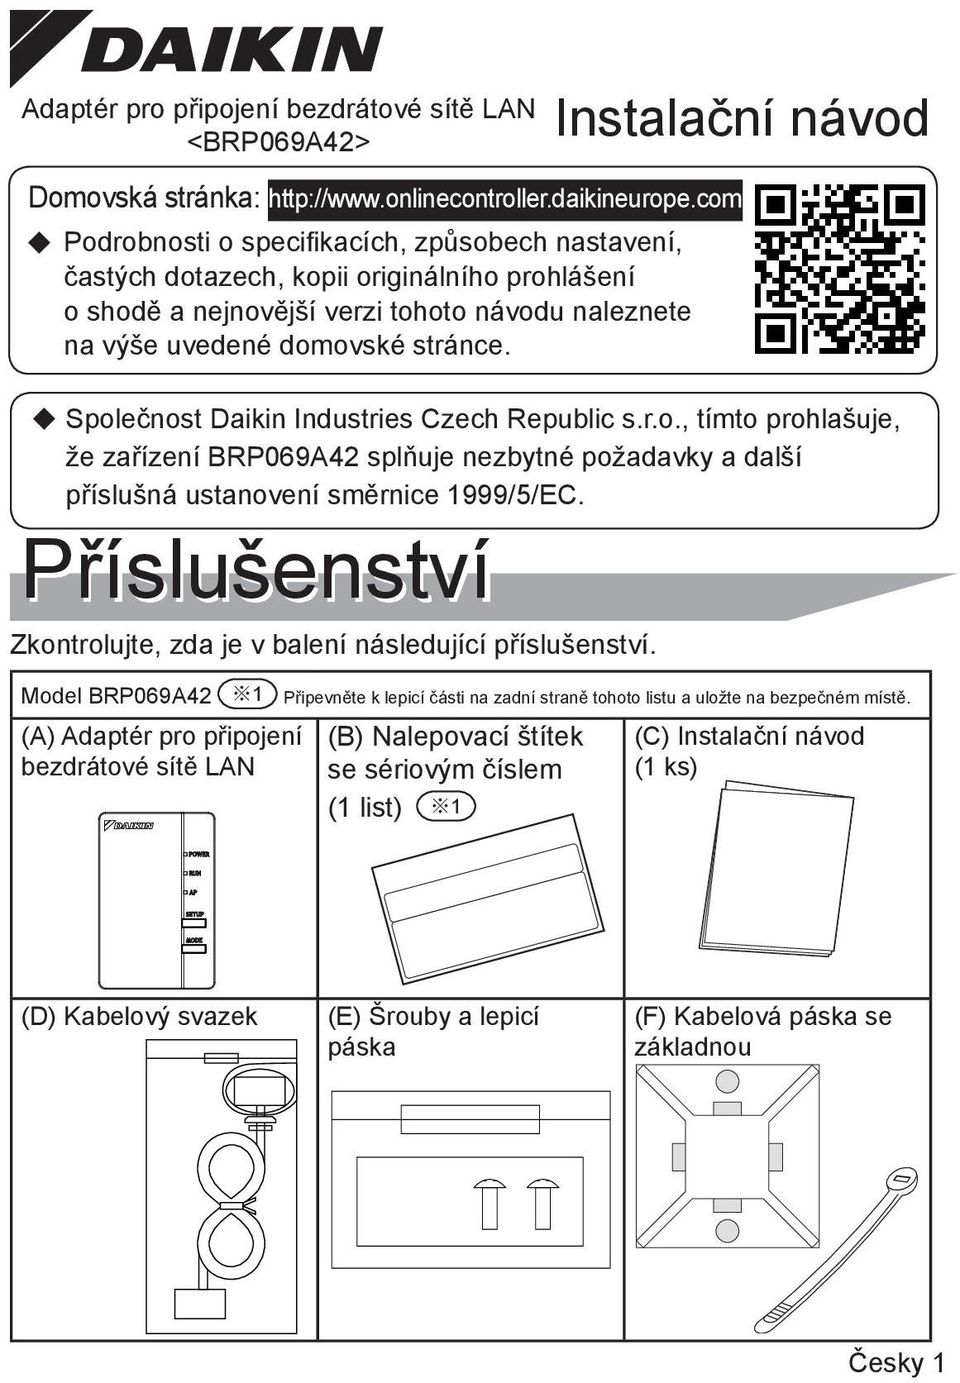 Společnost Daikin Industries Czech Republic s.r.o., tímto prohlašuje, že zařízení BRP069A42 splňuje nezbytné požadavky a další příslušná ustanovení směrnice 1999/5/EC.